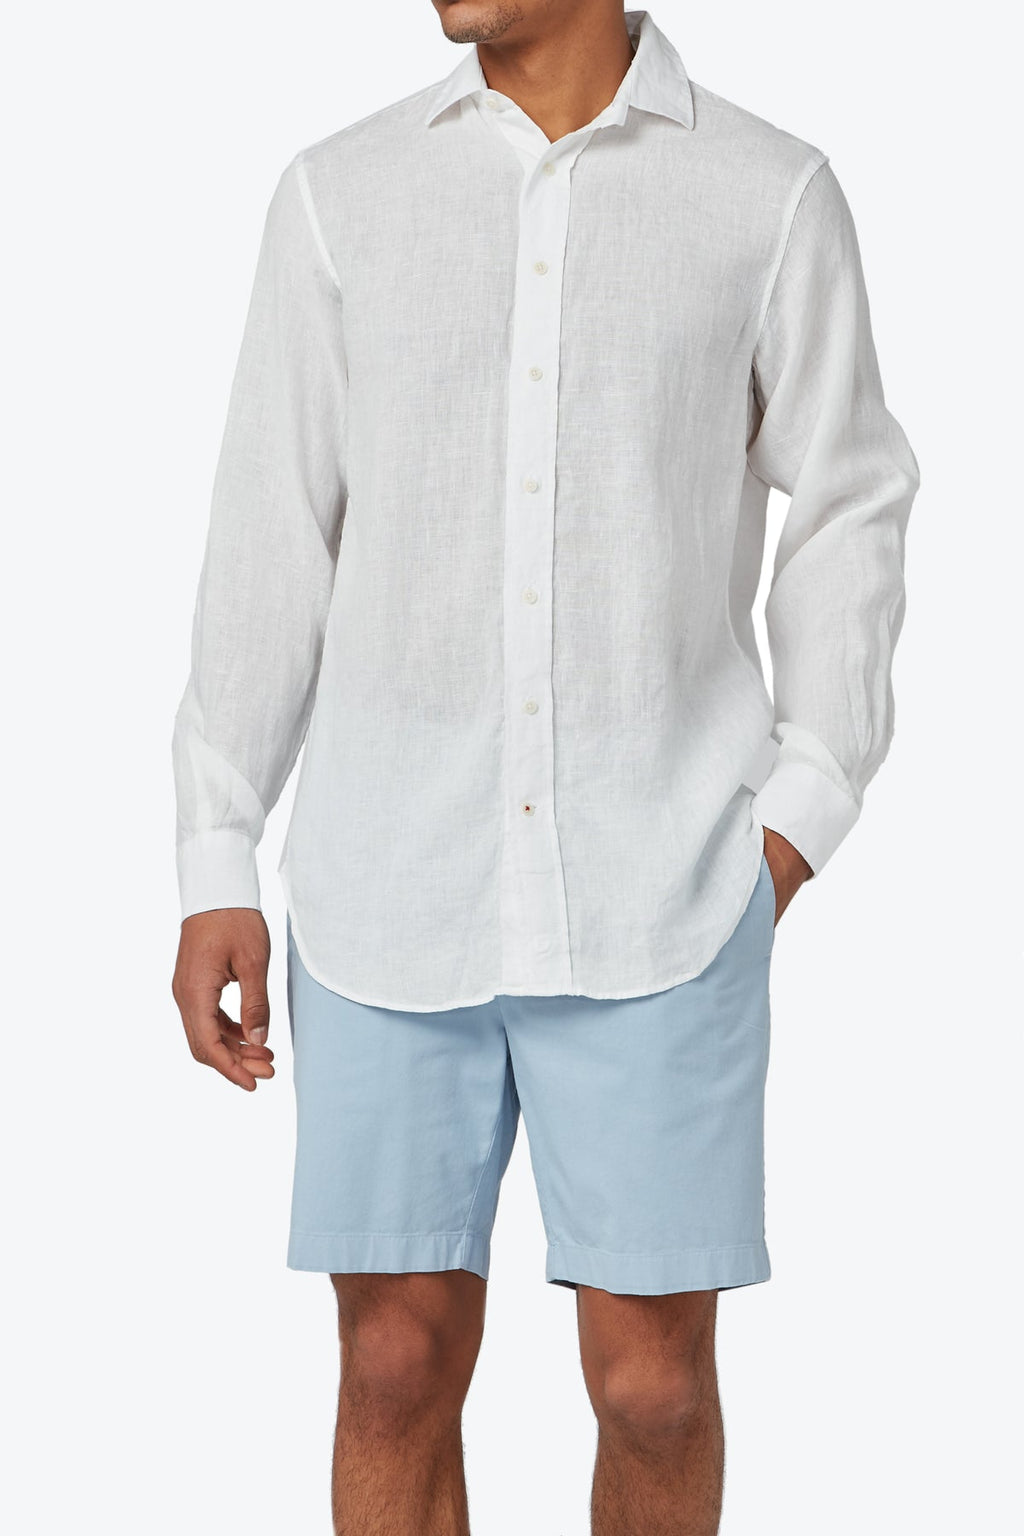 Love Brand & Co - Men's Abaco Linen Shirt - White